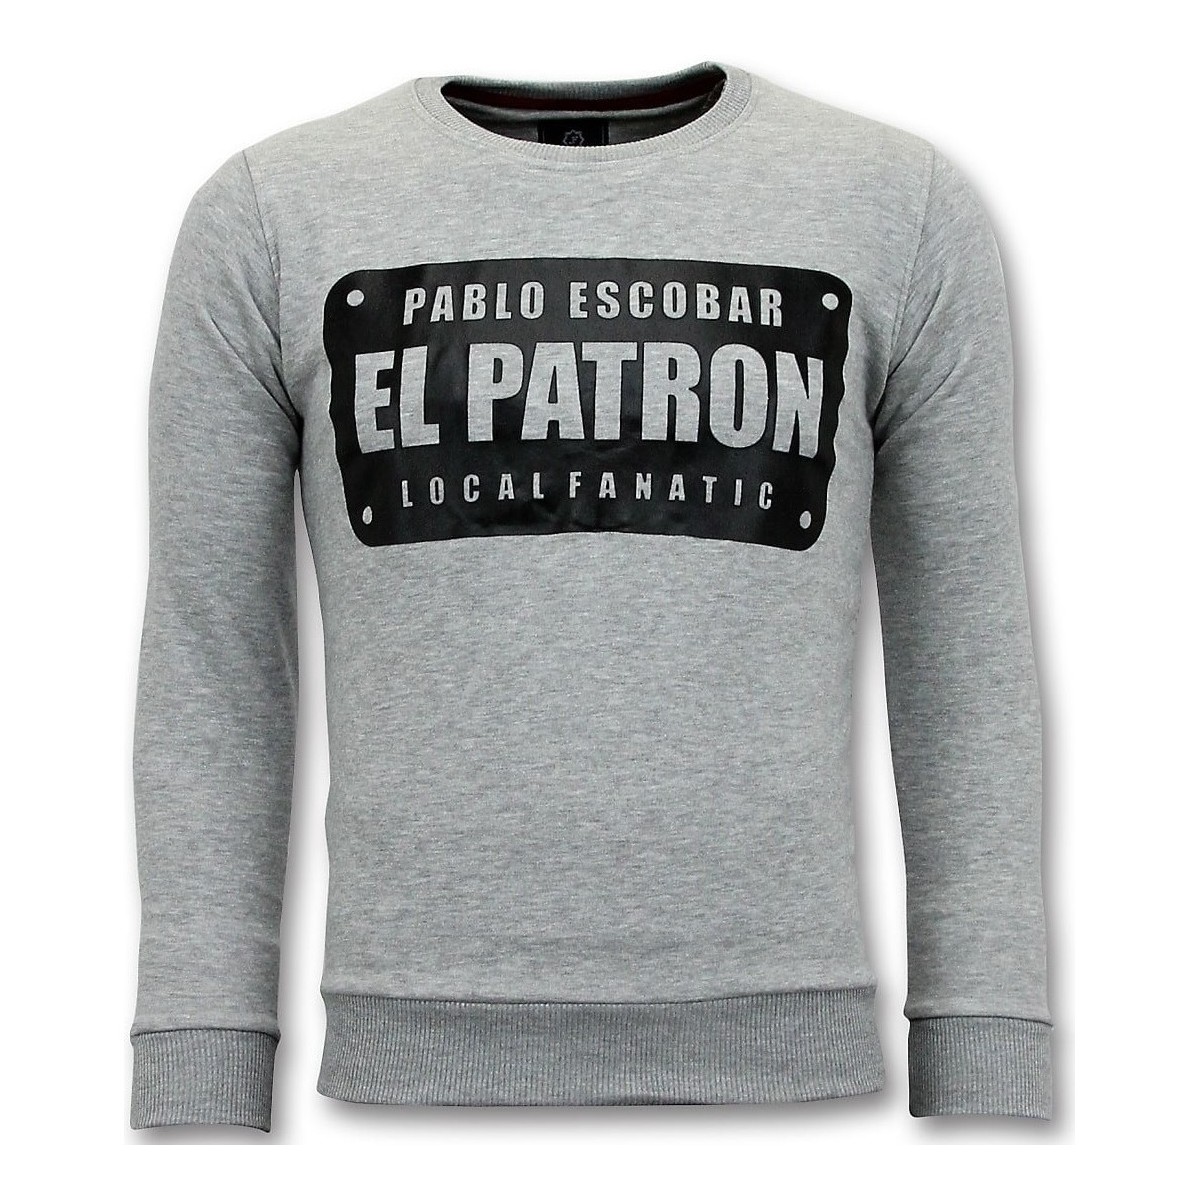 textil Herr Sweatshirts Local Fanatic Pablo Escobar El Patron Grå